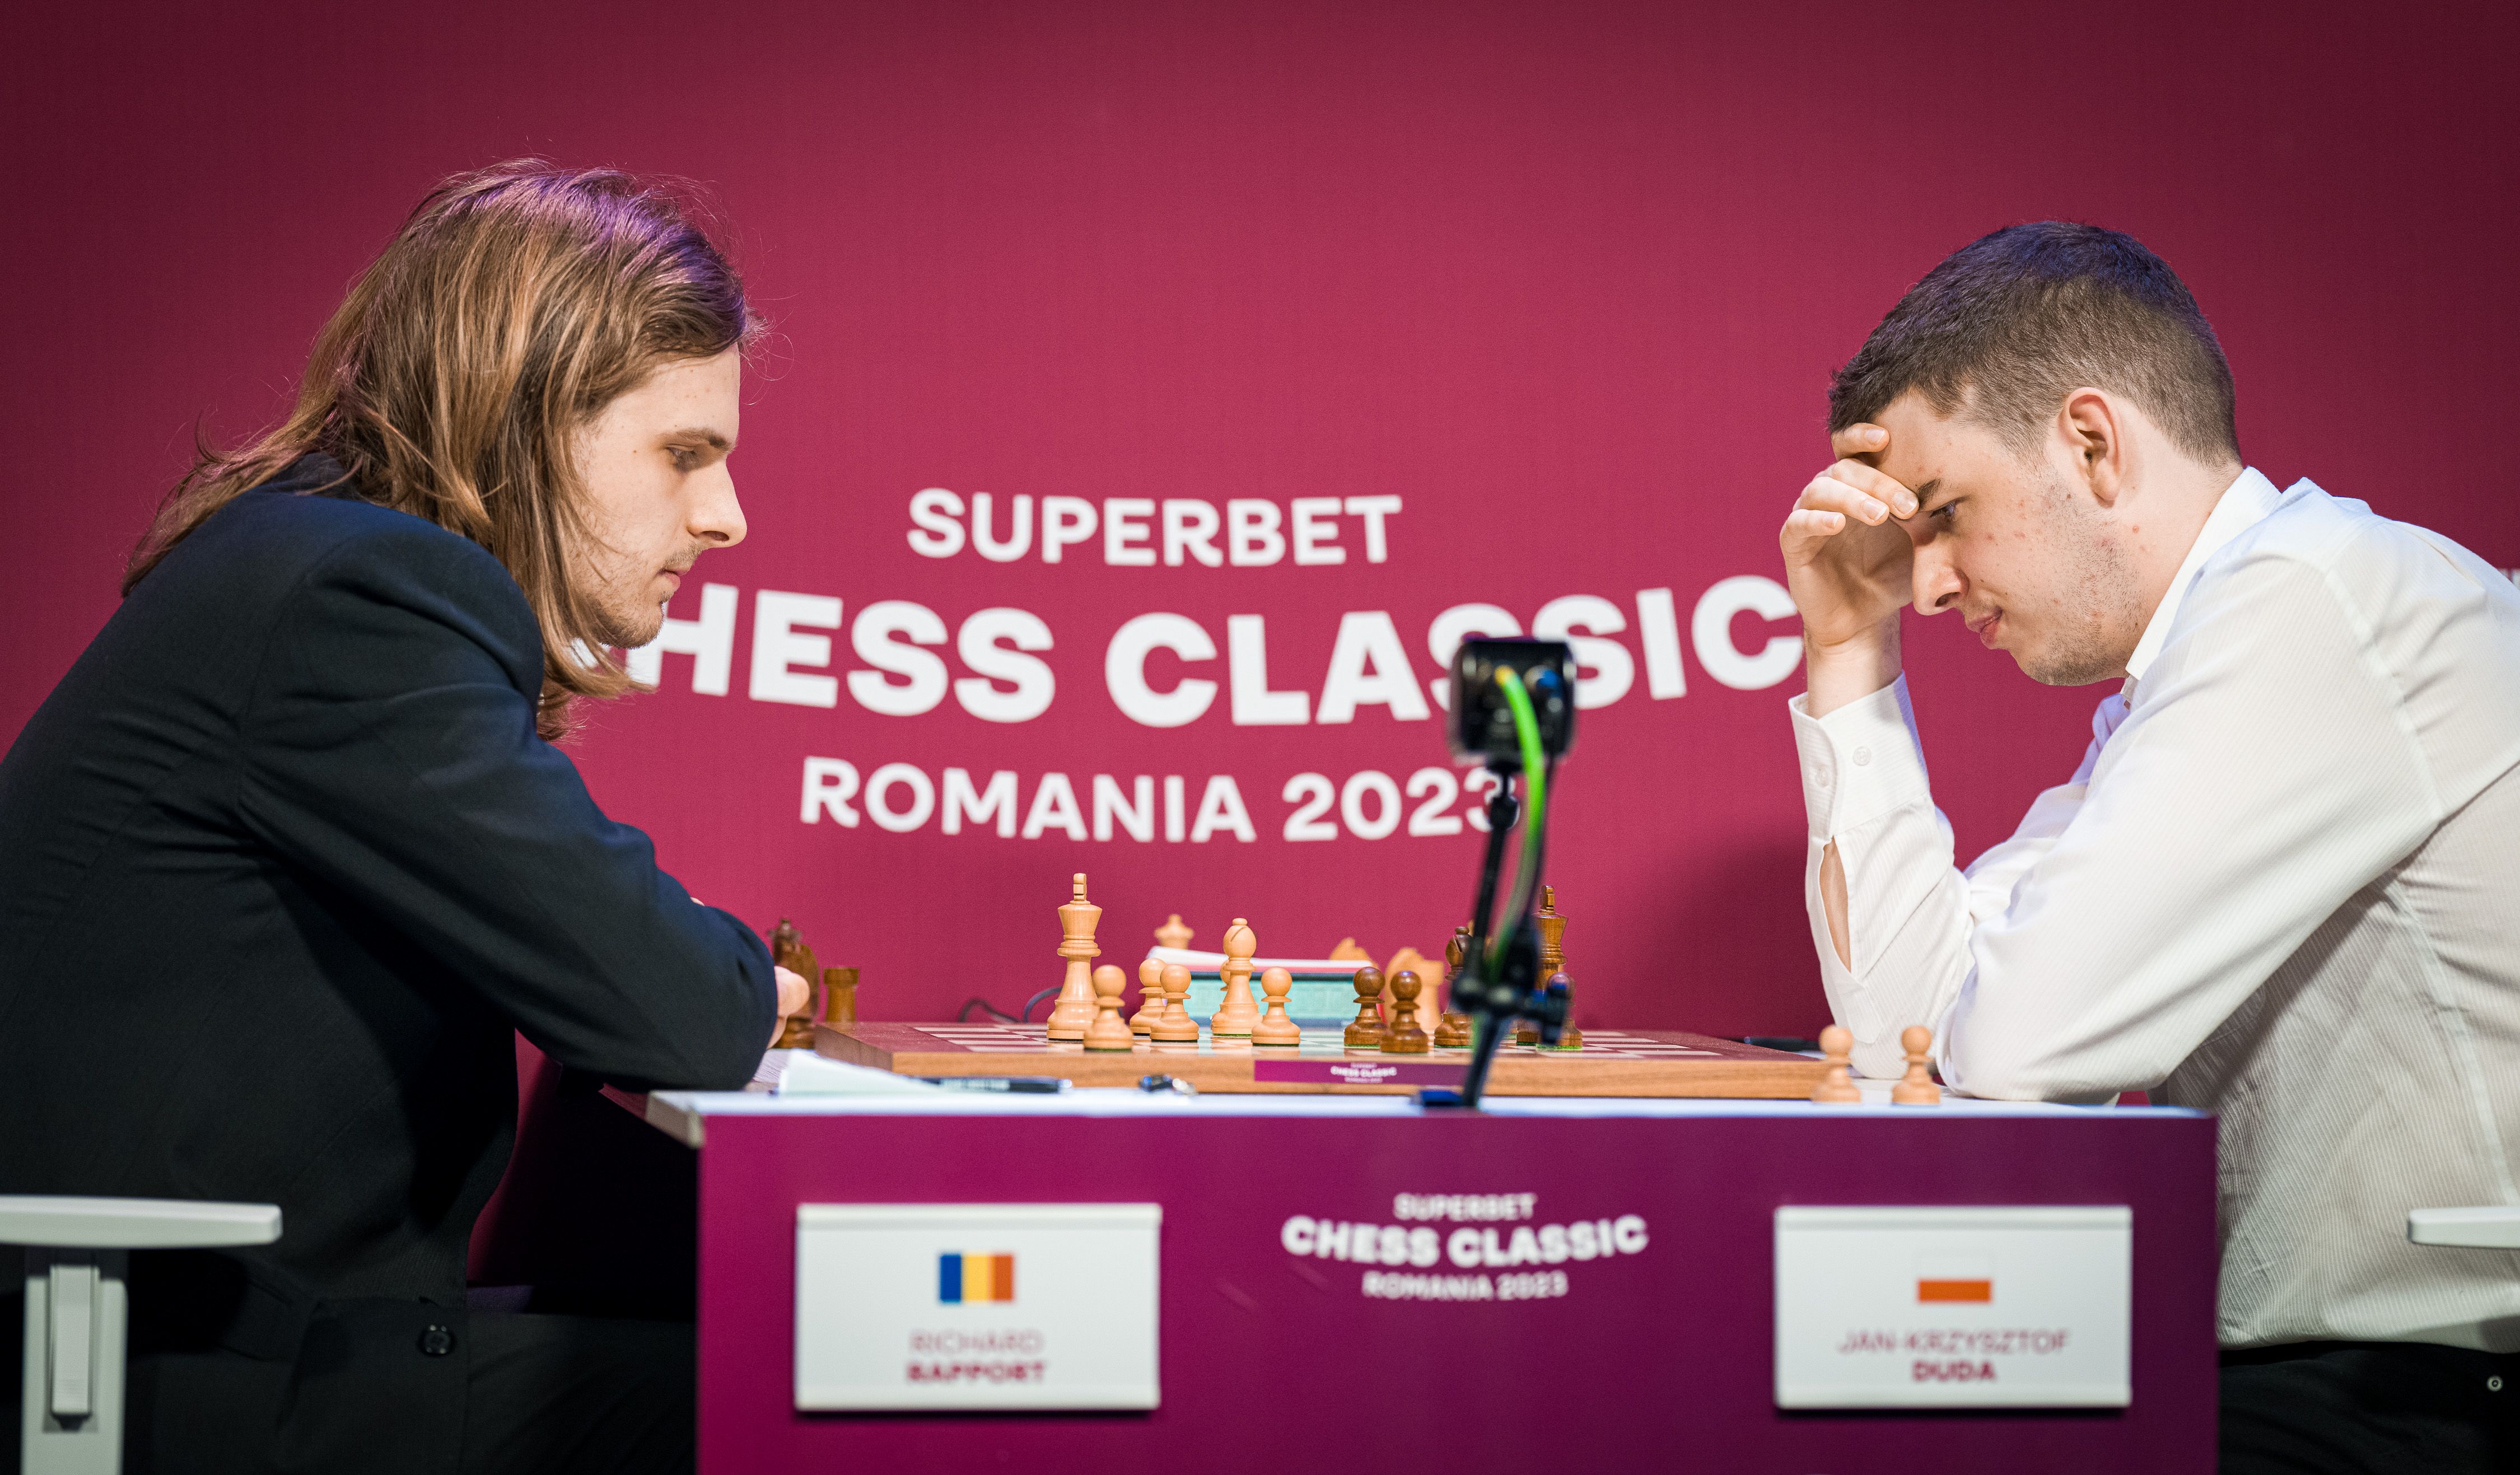 Superbet Chess Classic 1: So gets Firouzja revenge